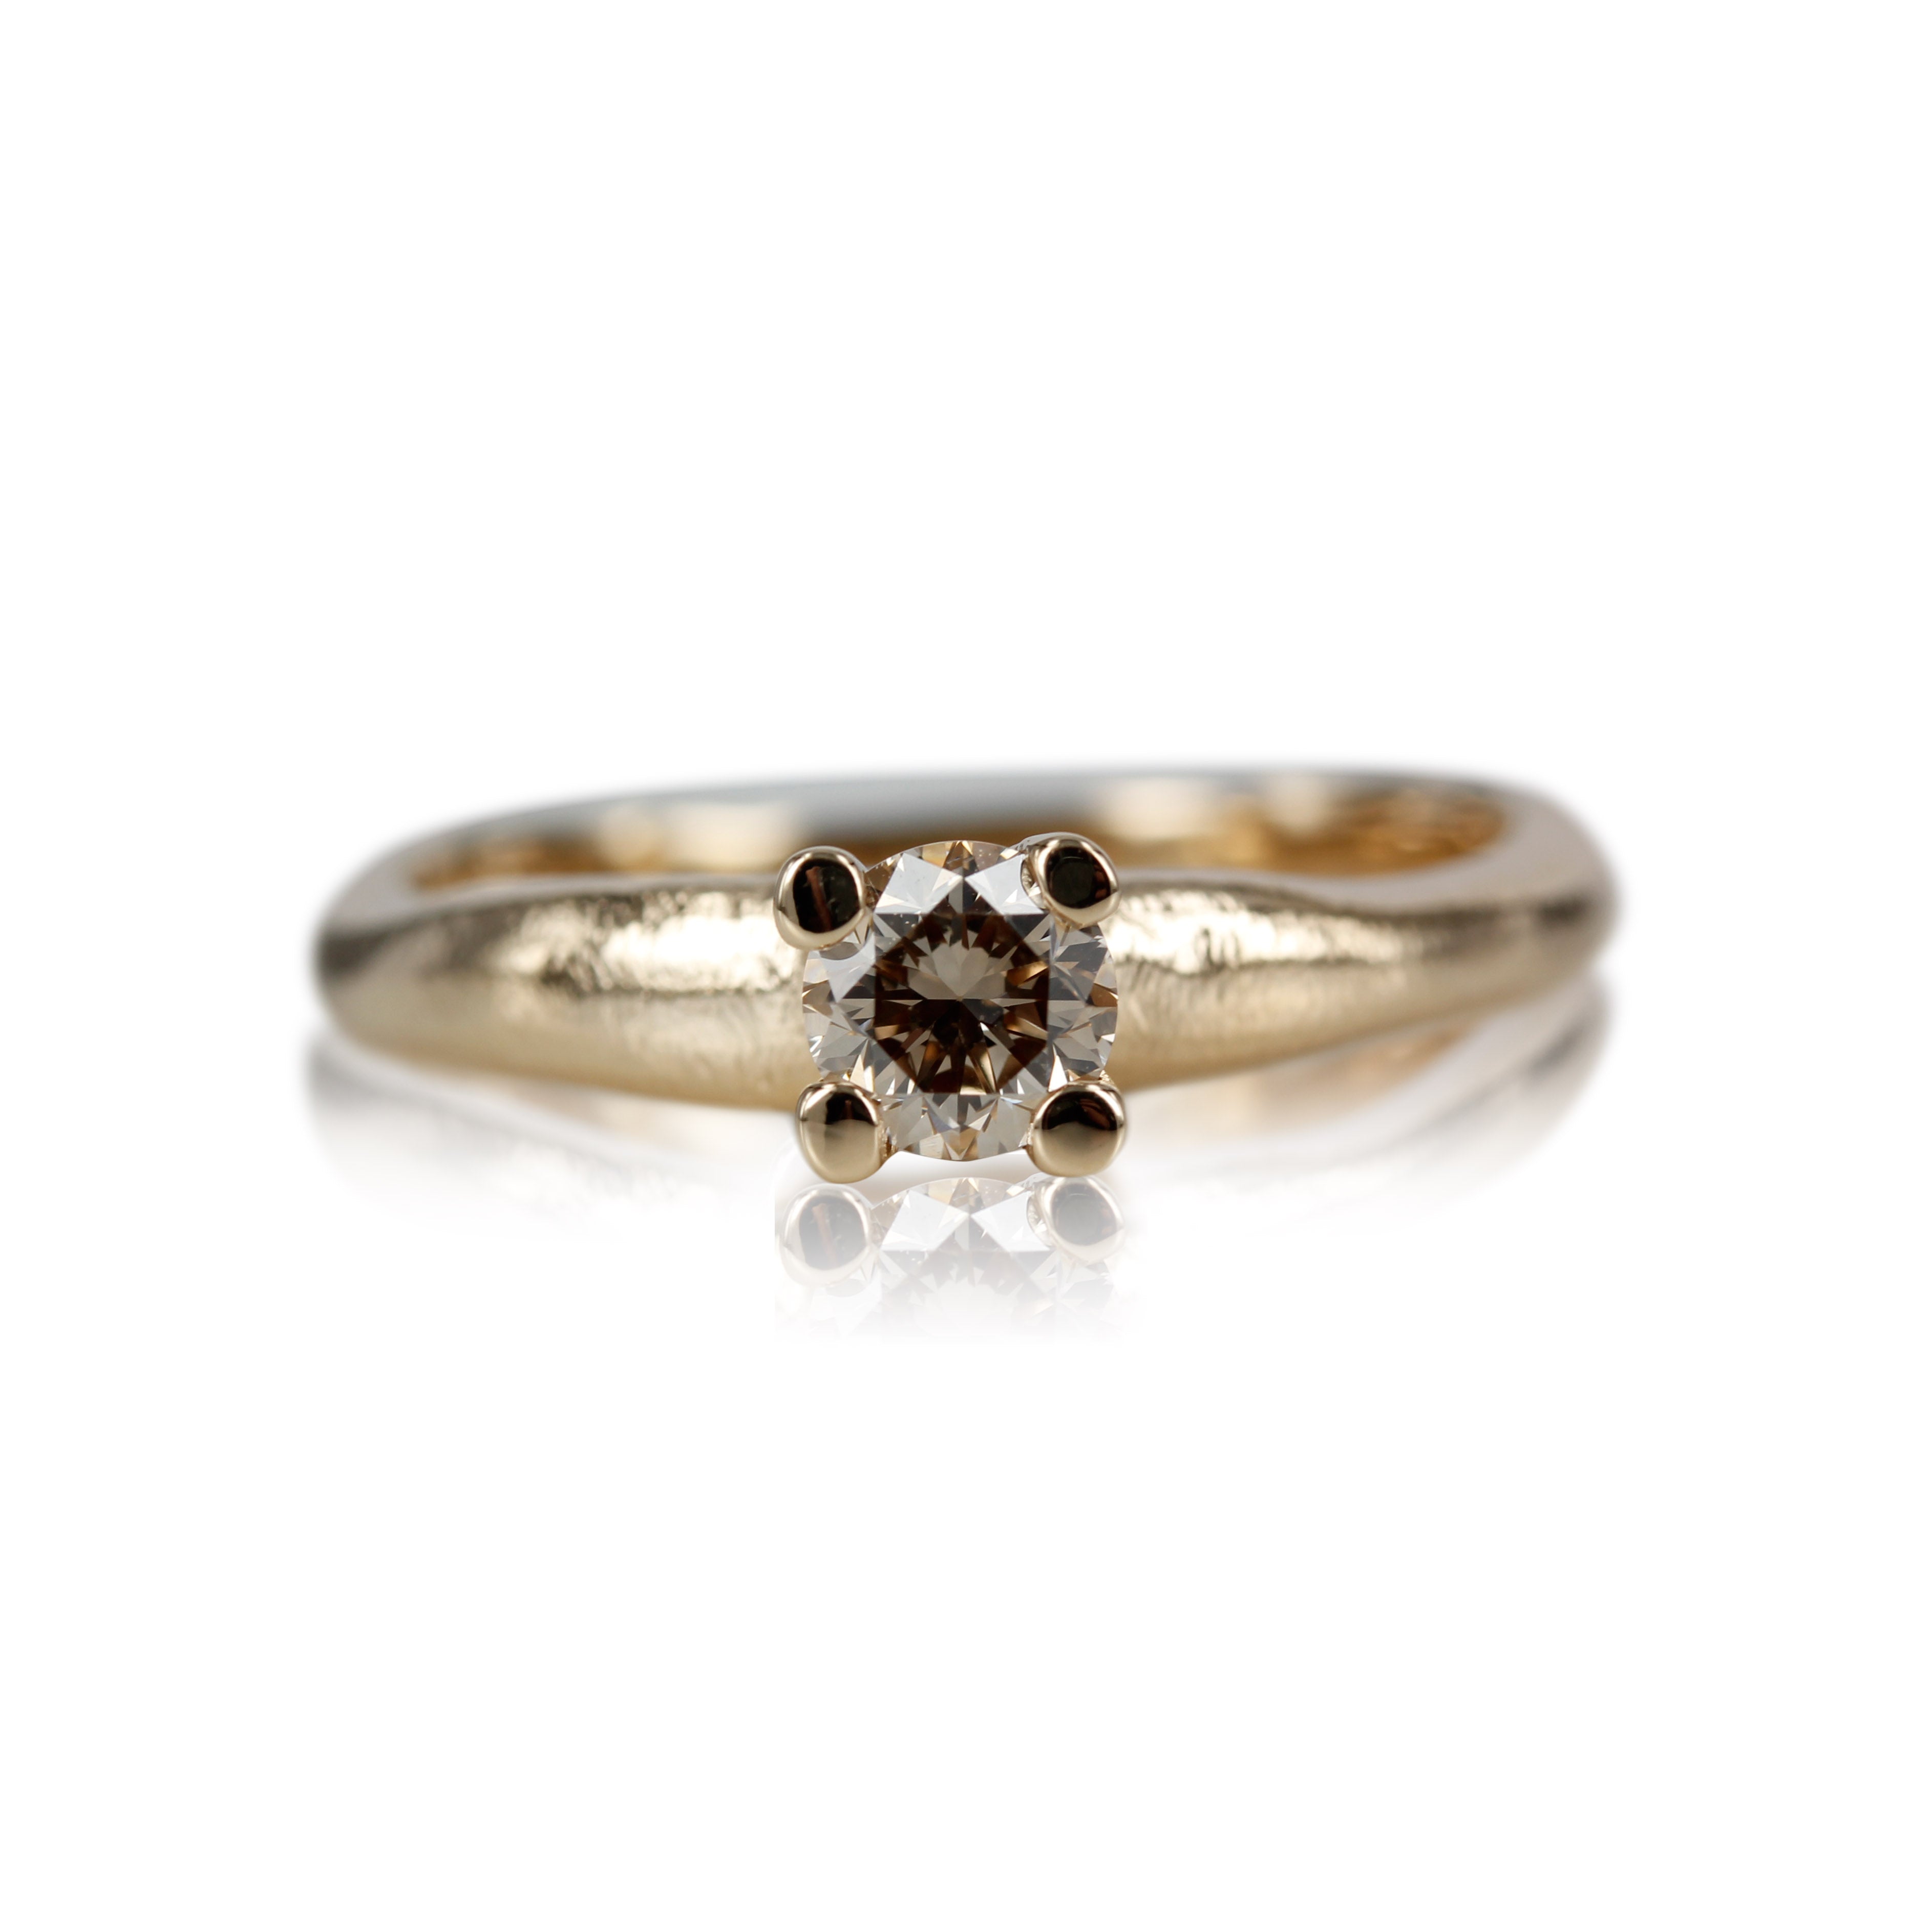 Organisk ring med rustik look, ringen er designet med tanke for den klassiske prinsessering med et tvist, isat 0.50 ct. champagne farver diamant. 